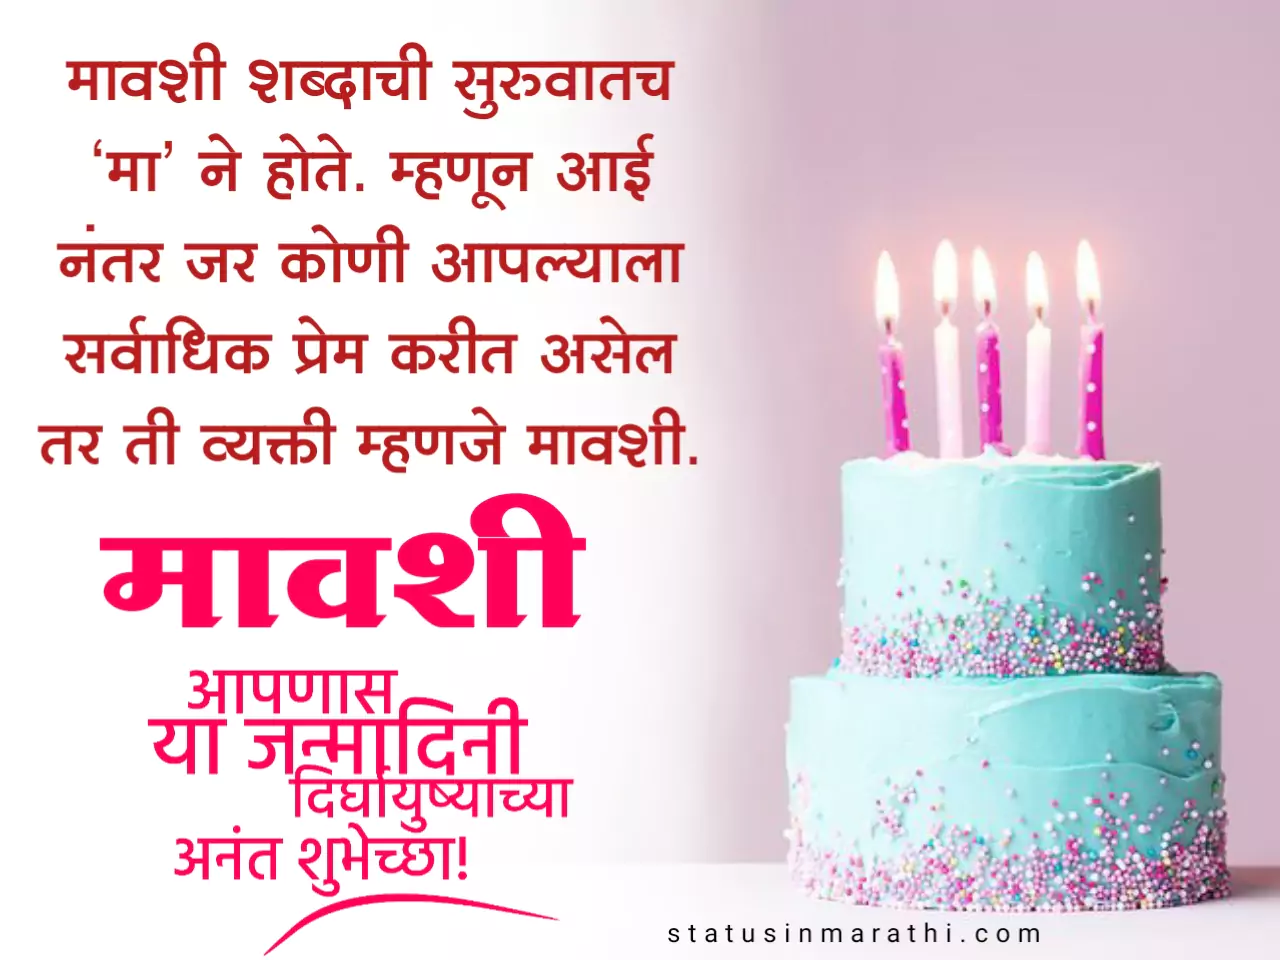 Happy Birthday Wishes For Mavshi In Marathi